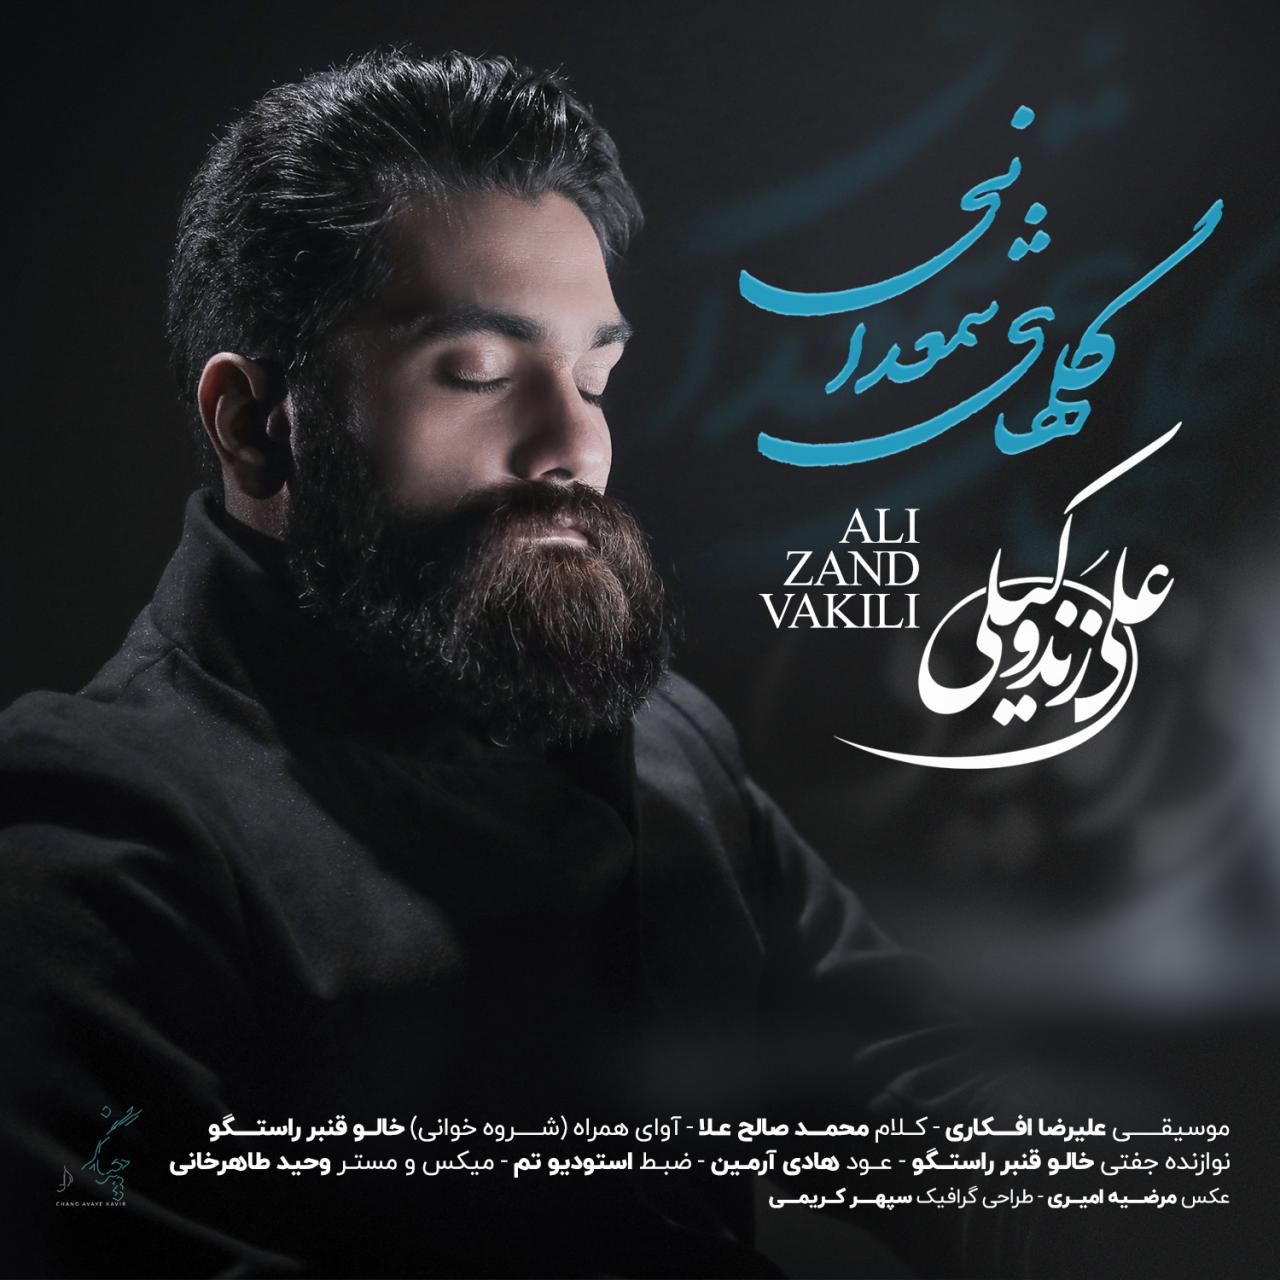  دانلود آهنگ جدید علی زند وکیلی - گلهای شمعدانی | Download New Music By Ali Zand Vakili - Golhaye Shamdani